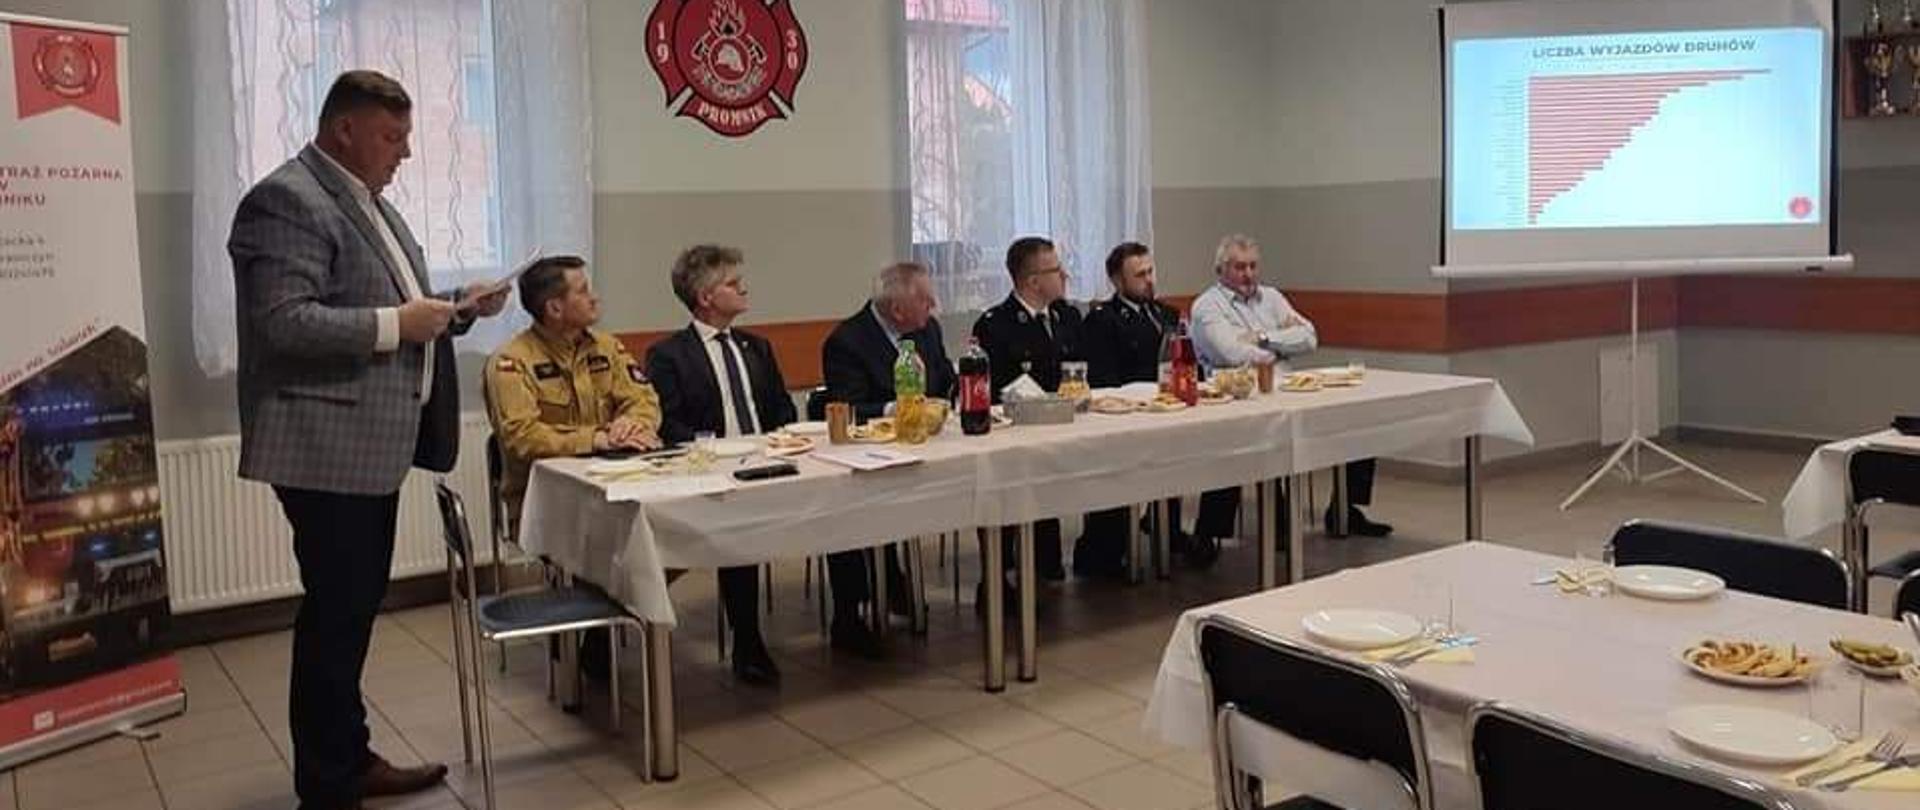 Zdjęcie przedstawia gości i organizatorów spotkania sprawozdawczego Ochotniczej Straży Pożarnej w Promniku podczas prezentacji.